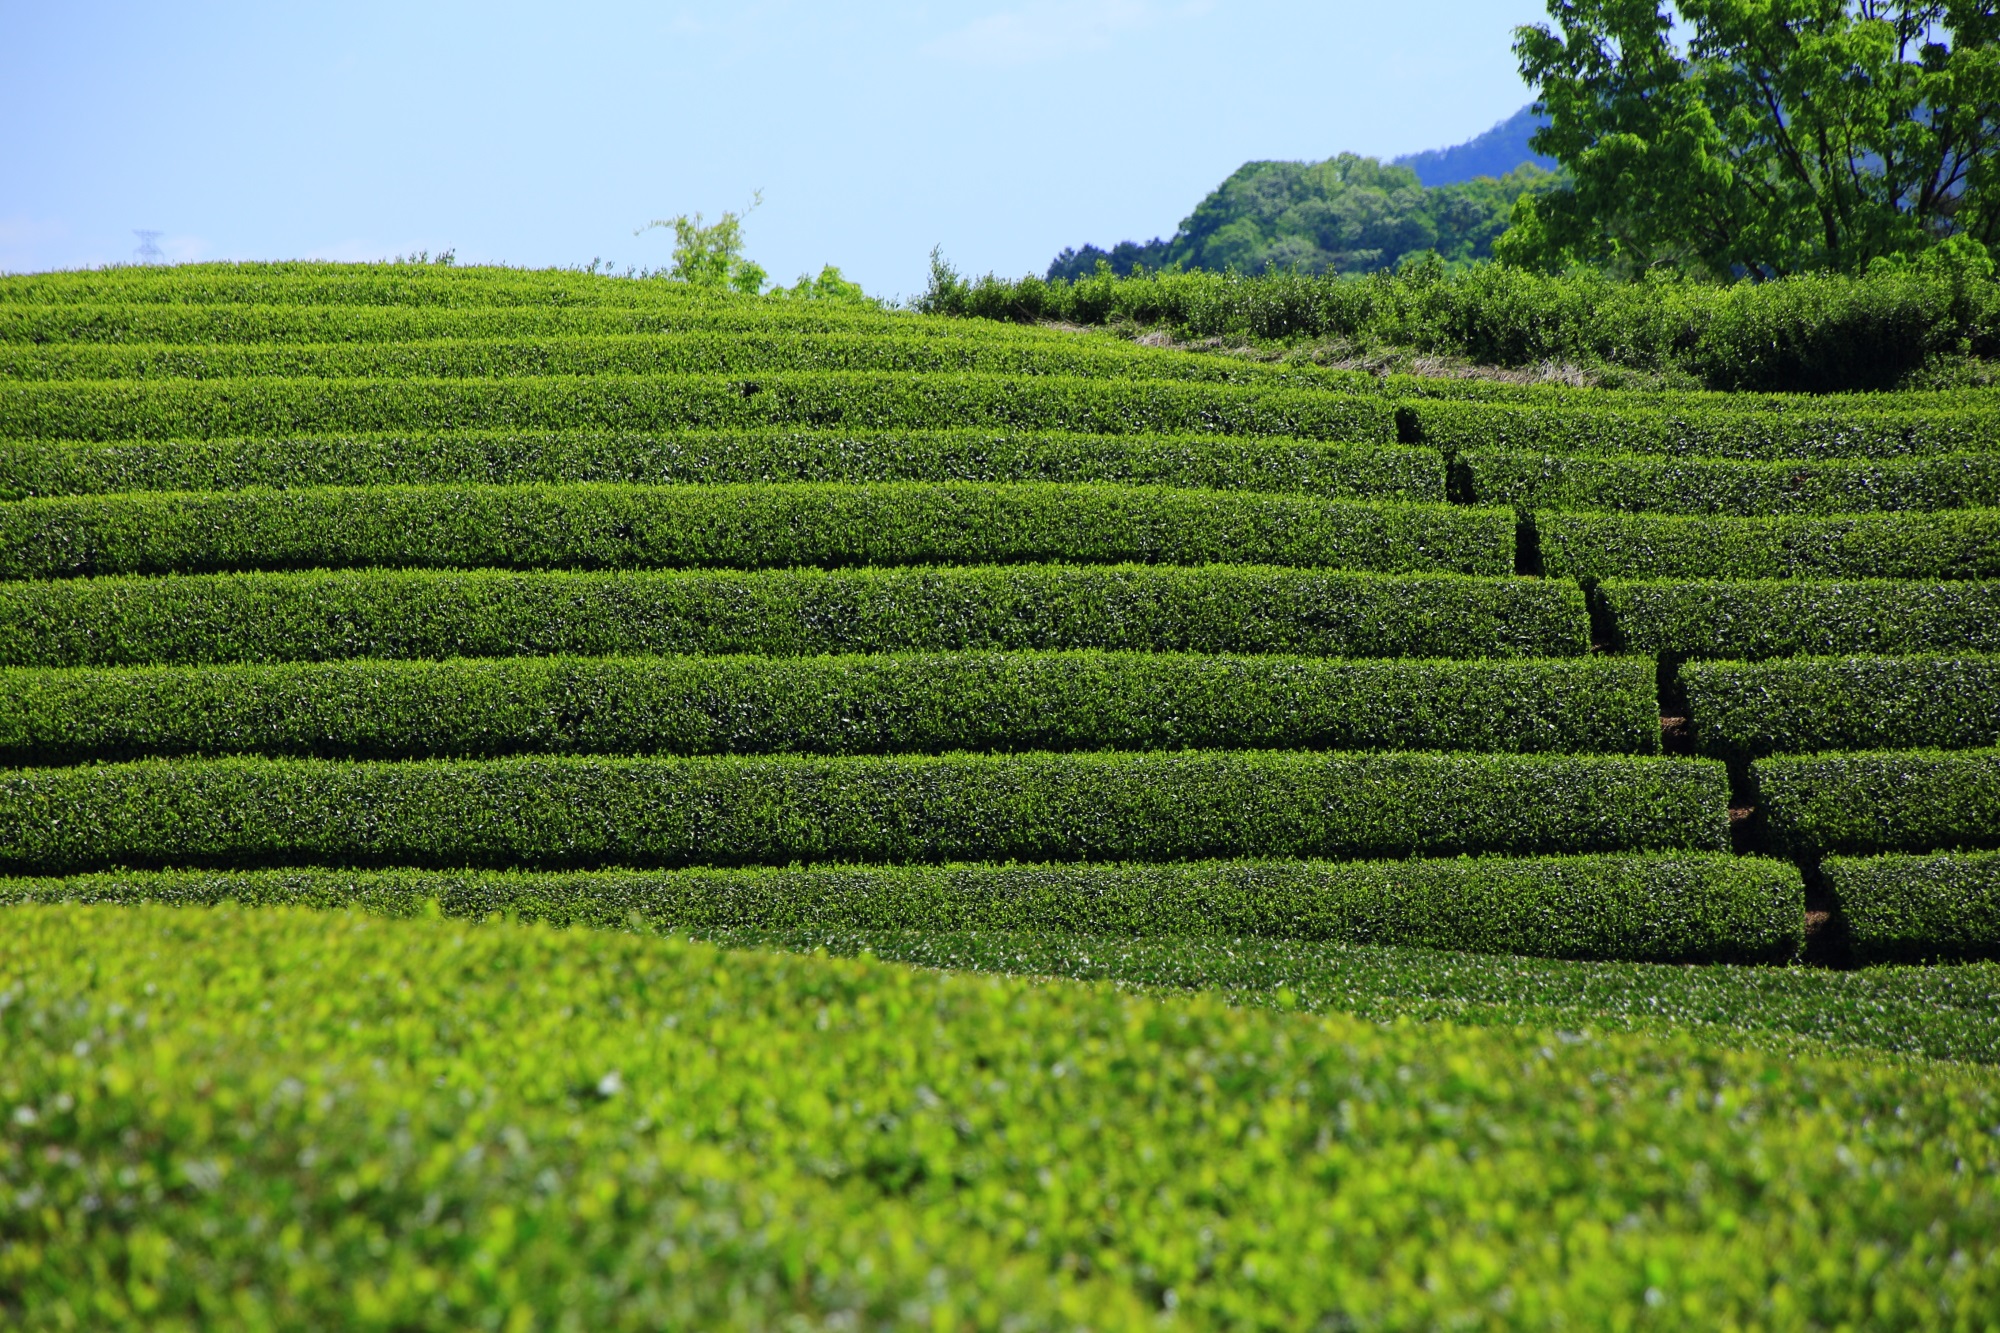 淡い緑から濃い緑まで色んな緑のお茶畑で賑わう和束町